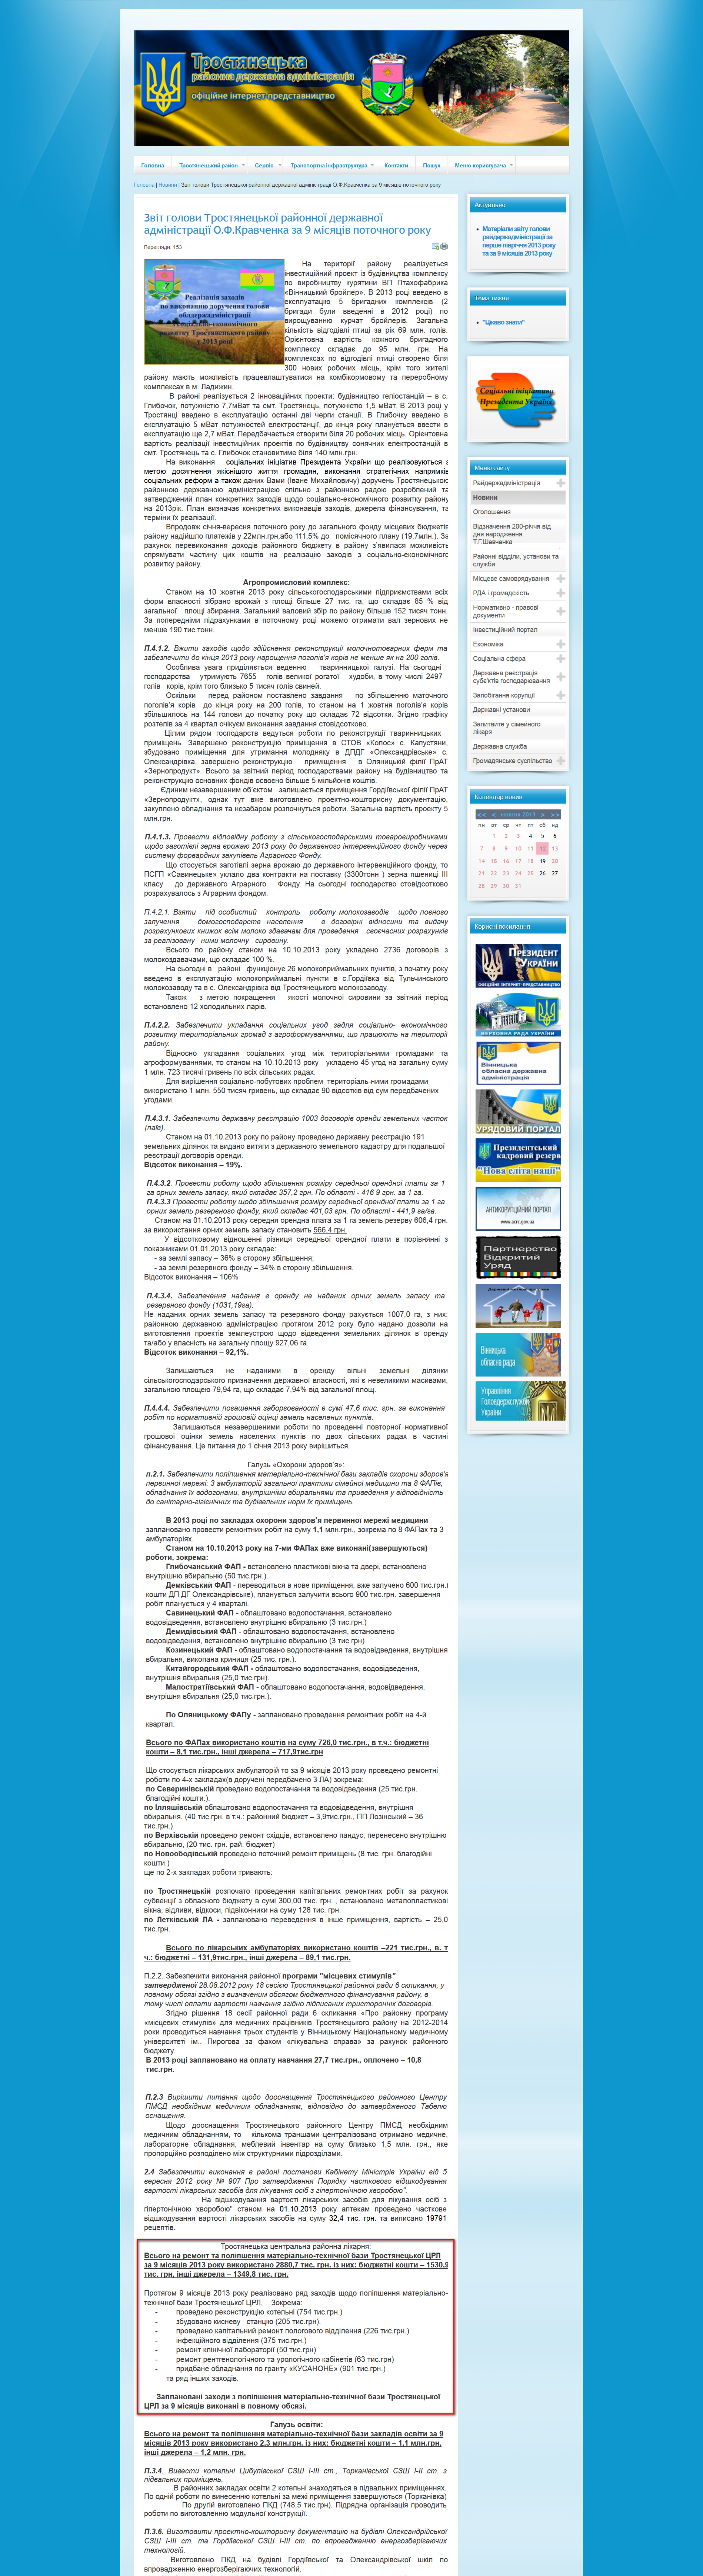 http://www.trostrda.gov.ua/novyny/2168-zvit-holovy-trostianetskoi-raionnoi-derzhavnoi-administratsii-o-f-kravchenka-za-9-misiatsiv-potochnoho-roku.html